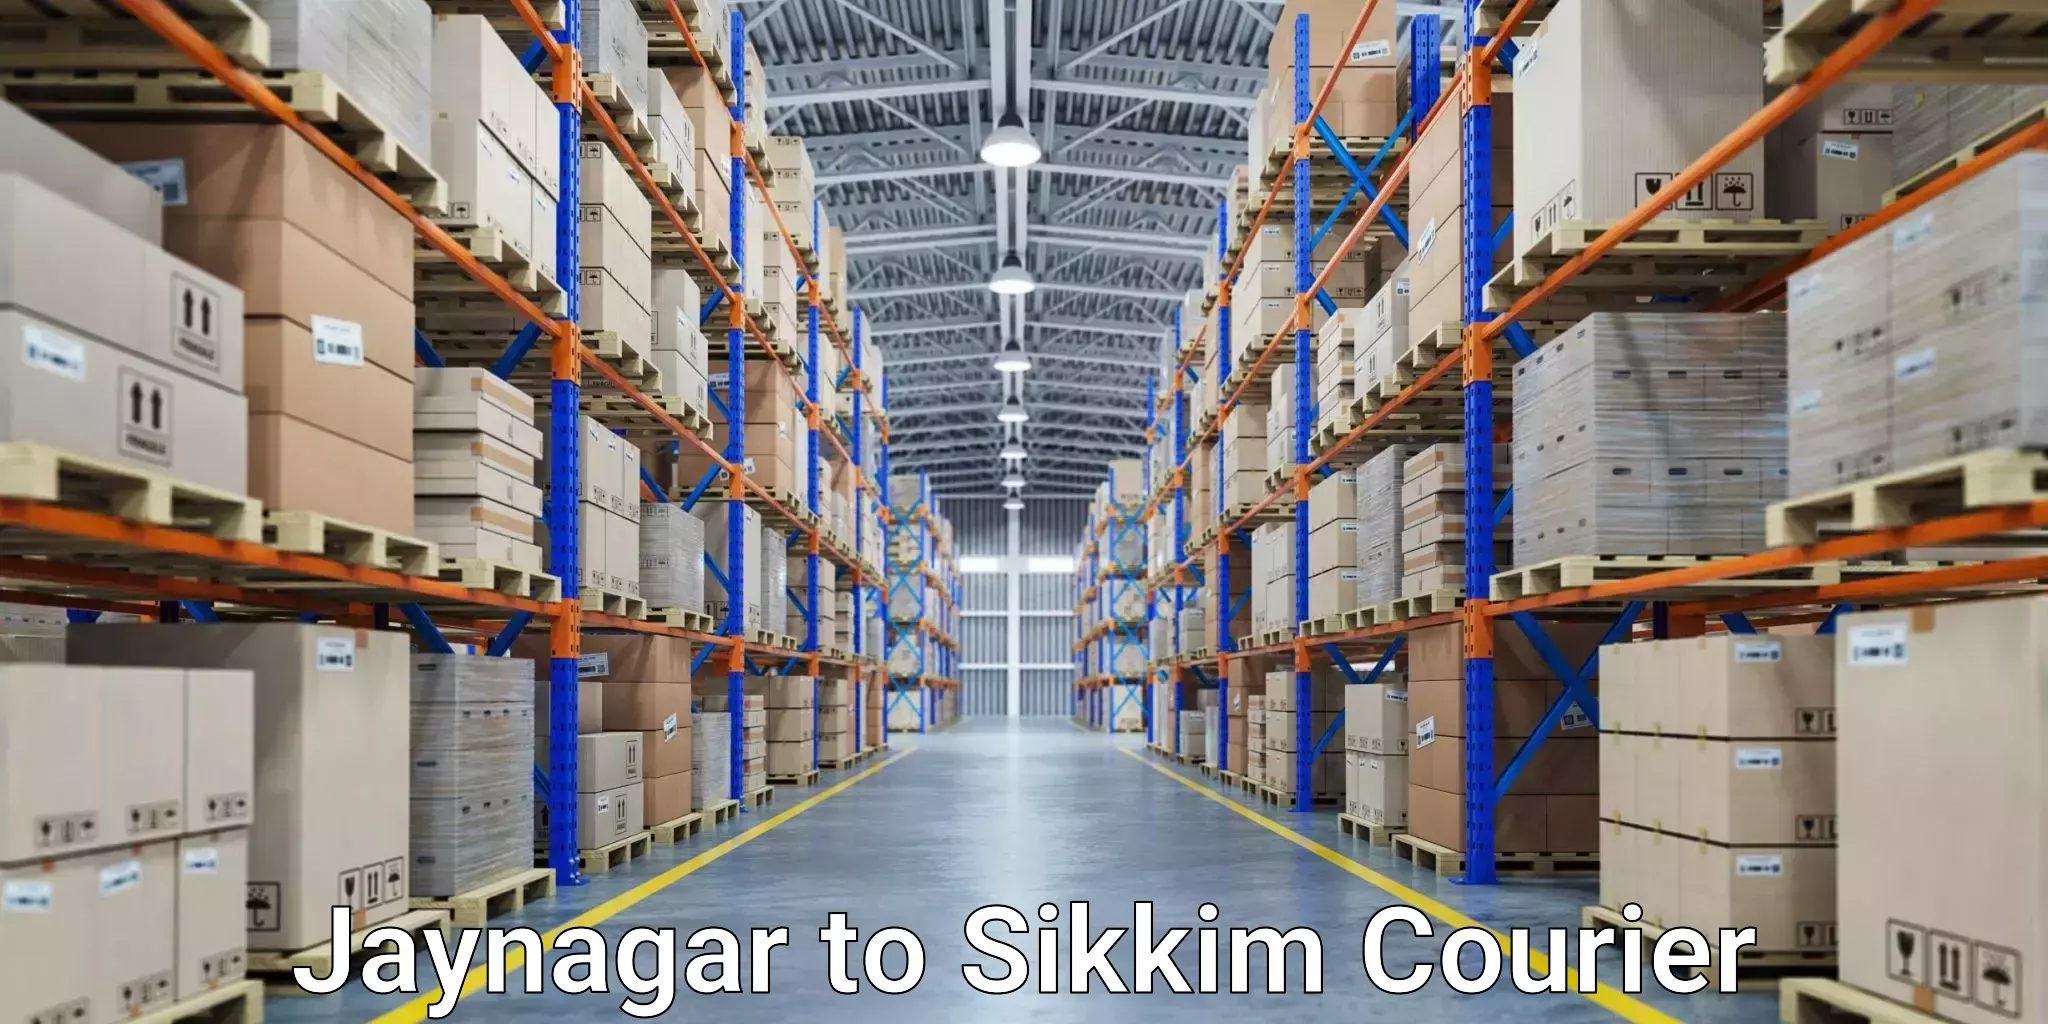 Courier service comparison Jaynagar to Sikkim